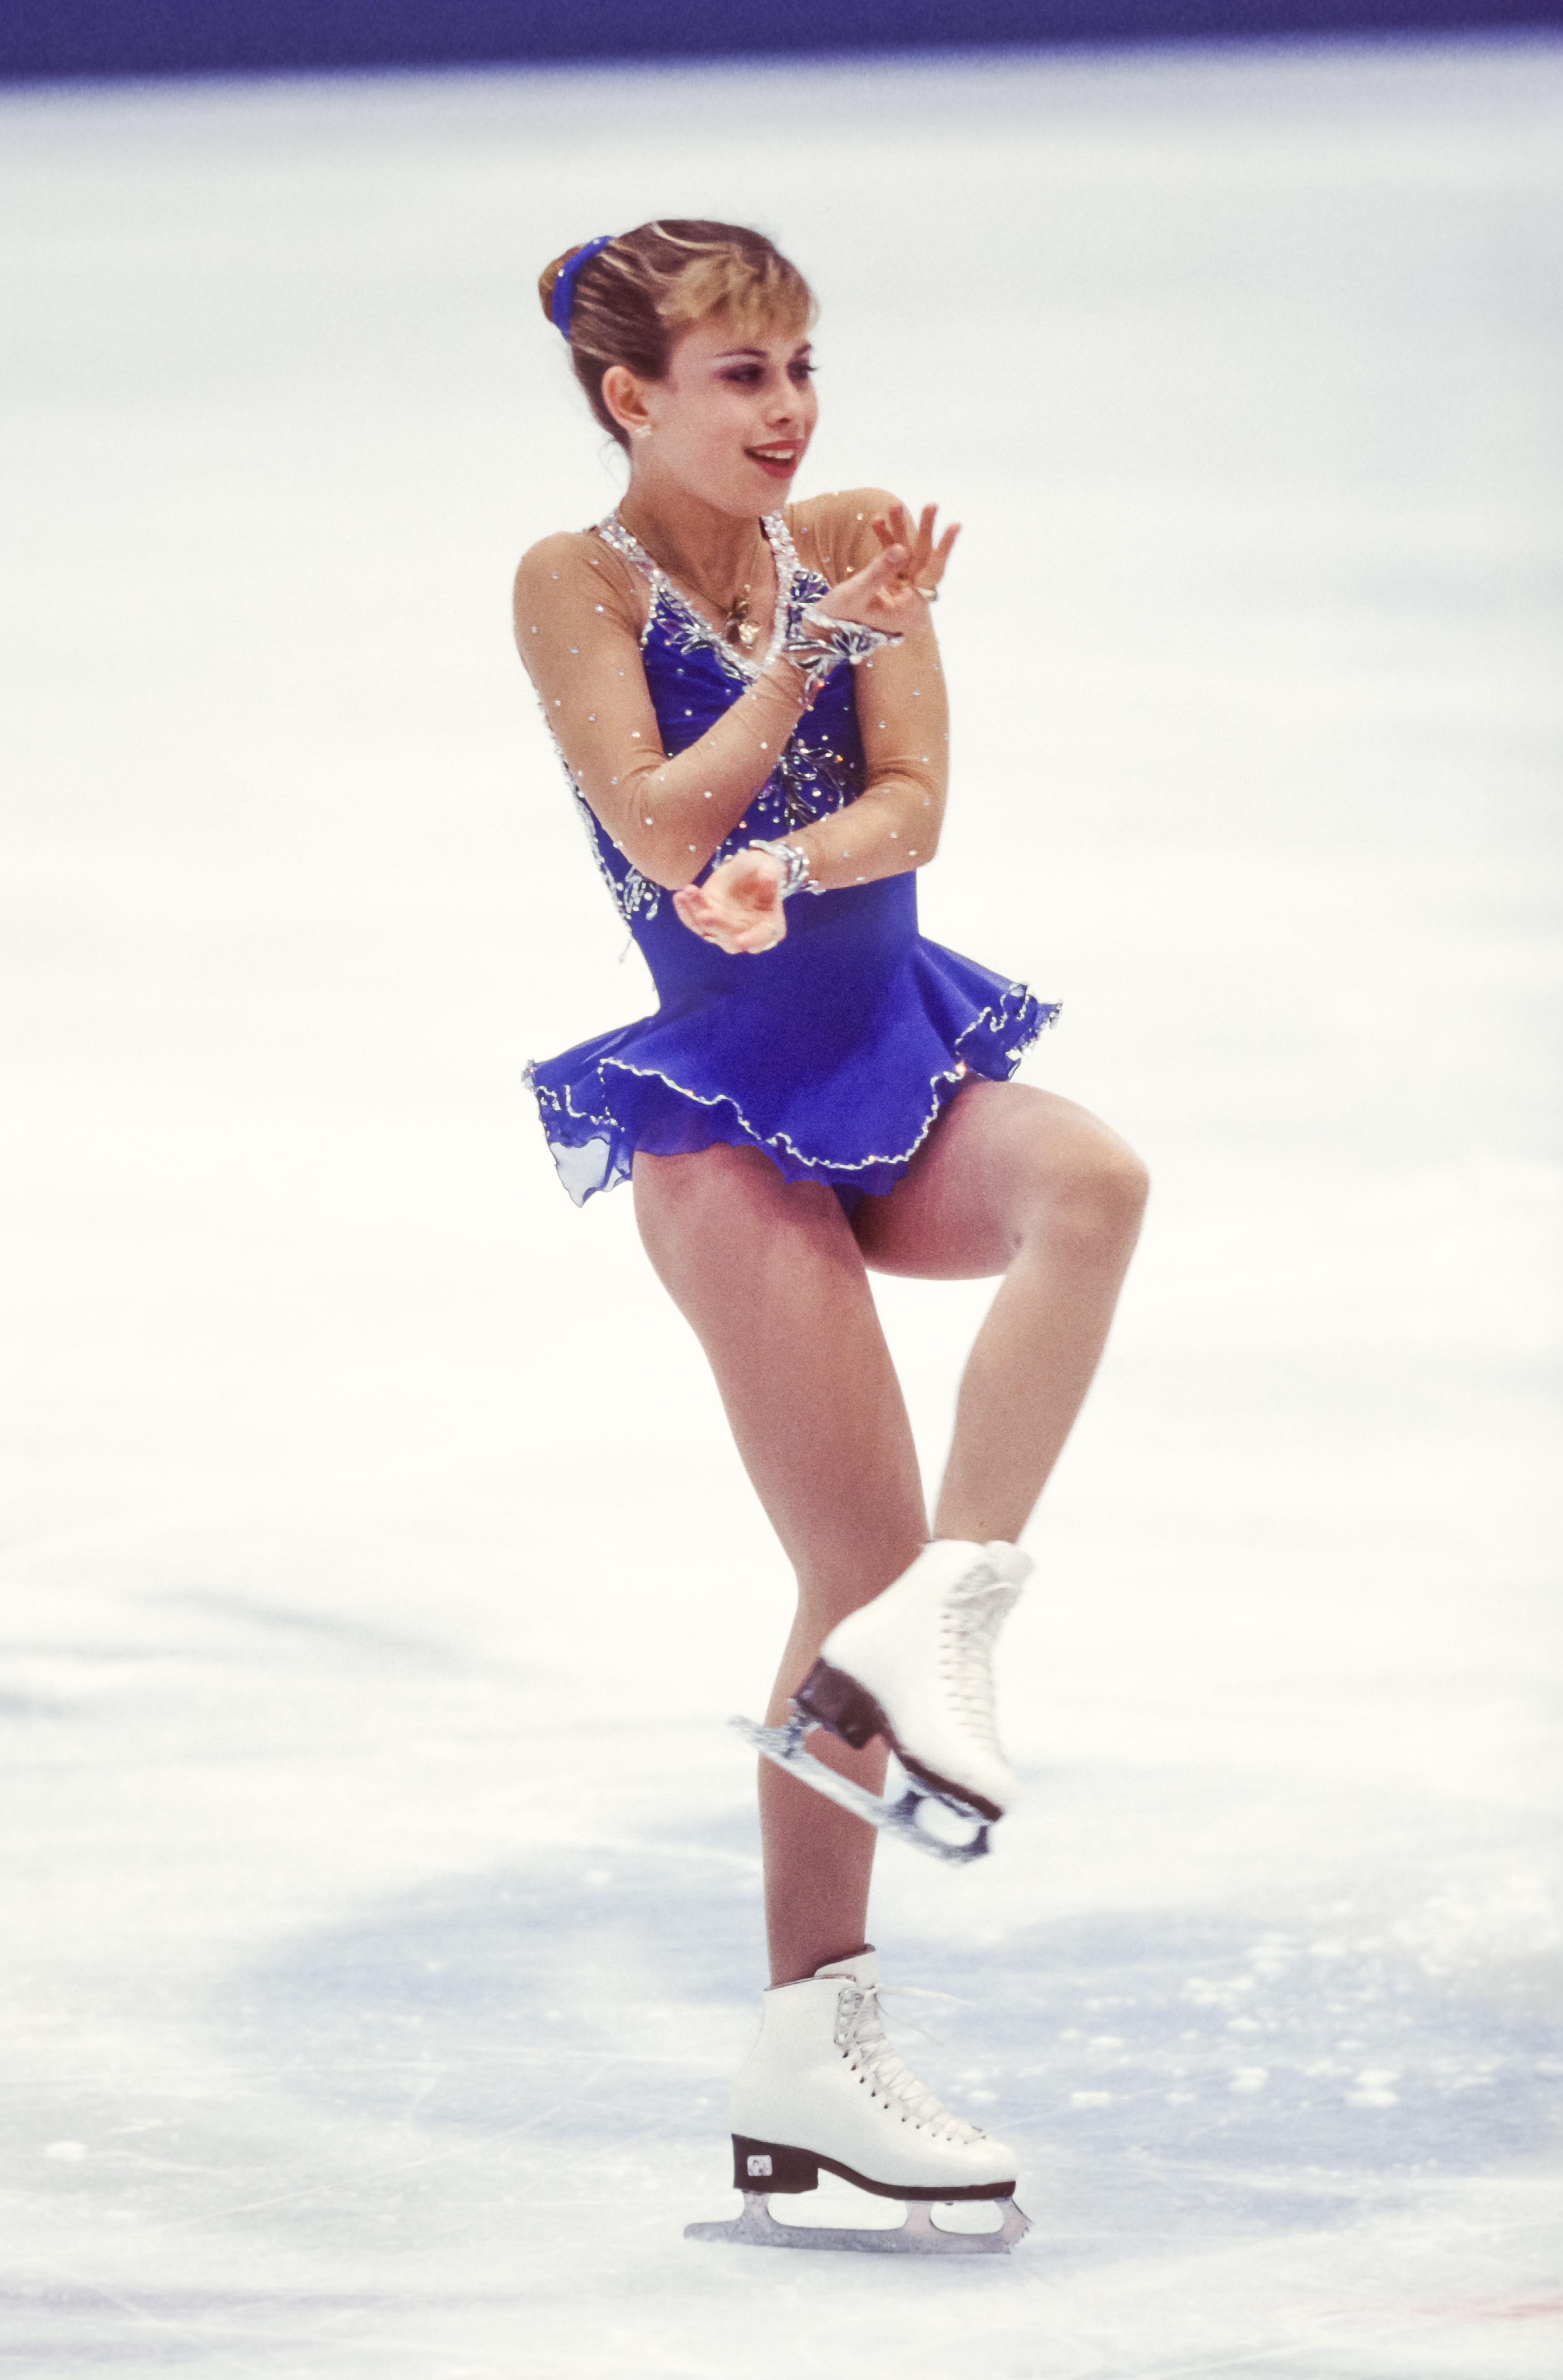 Tara Lipinski, représentant les États-Unis, participe à l'épreuve de patinage artistique libre en simple dames aux Jeux olympiques d'hiver le 20 février 1998, à Nagano, au Japon | Source : Getty Images